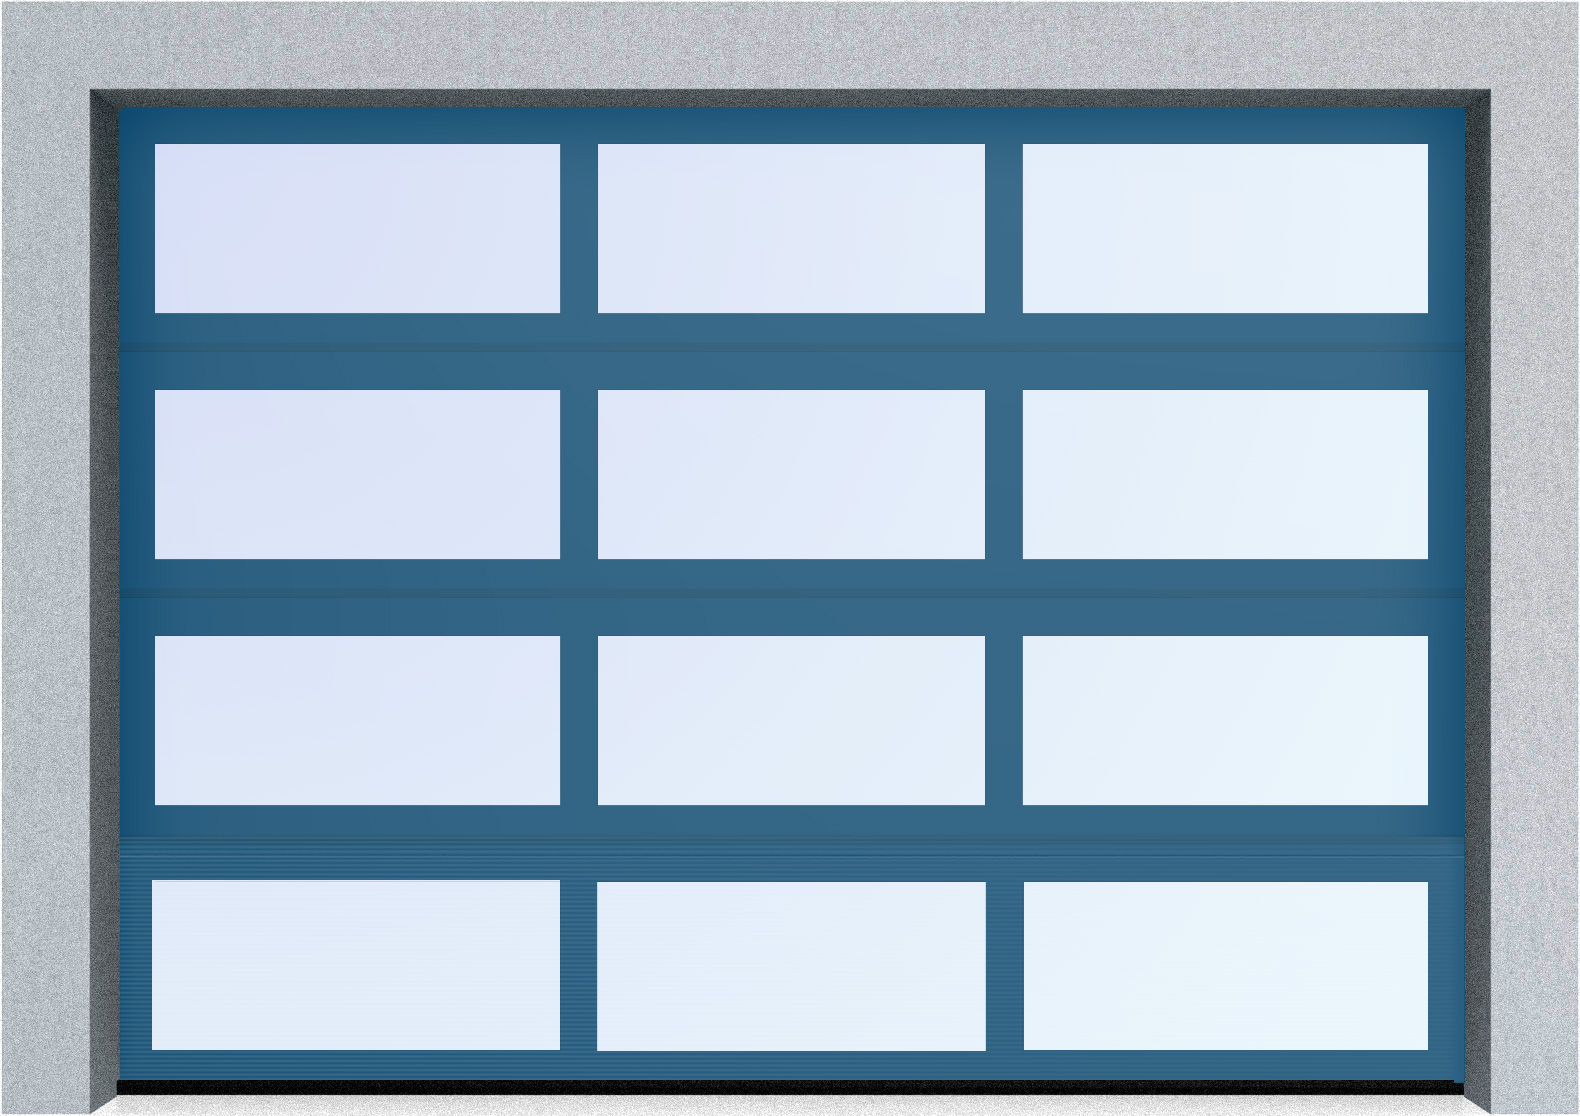  Секционные панорамные ворота серии AluTrend (АЛП) 5000х4500 нижняя панель стандартные цвета, фото 3 